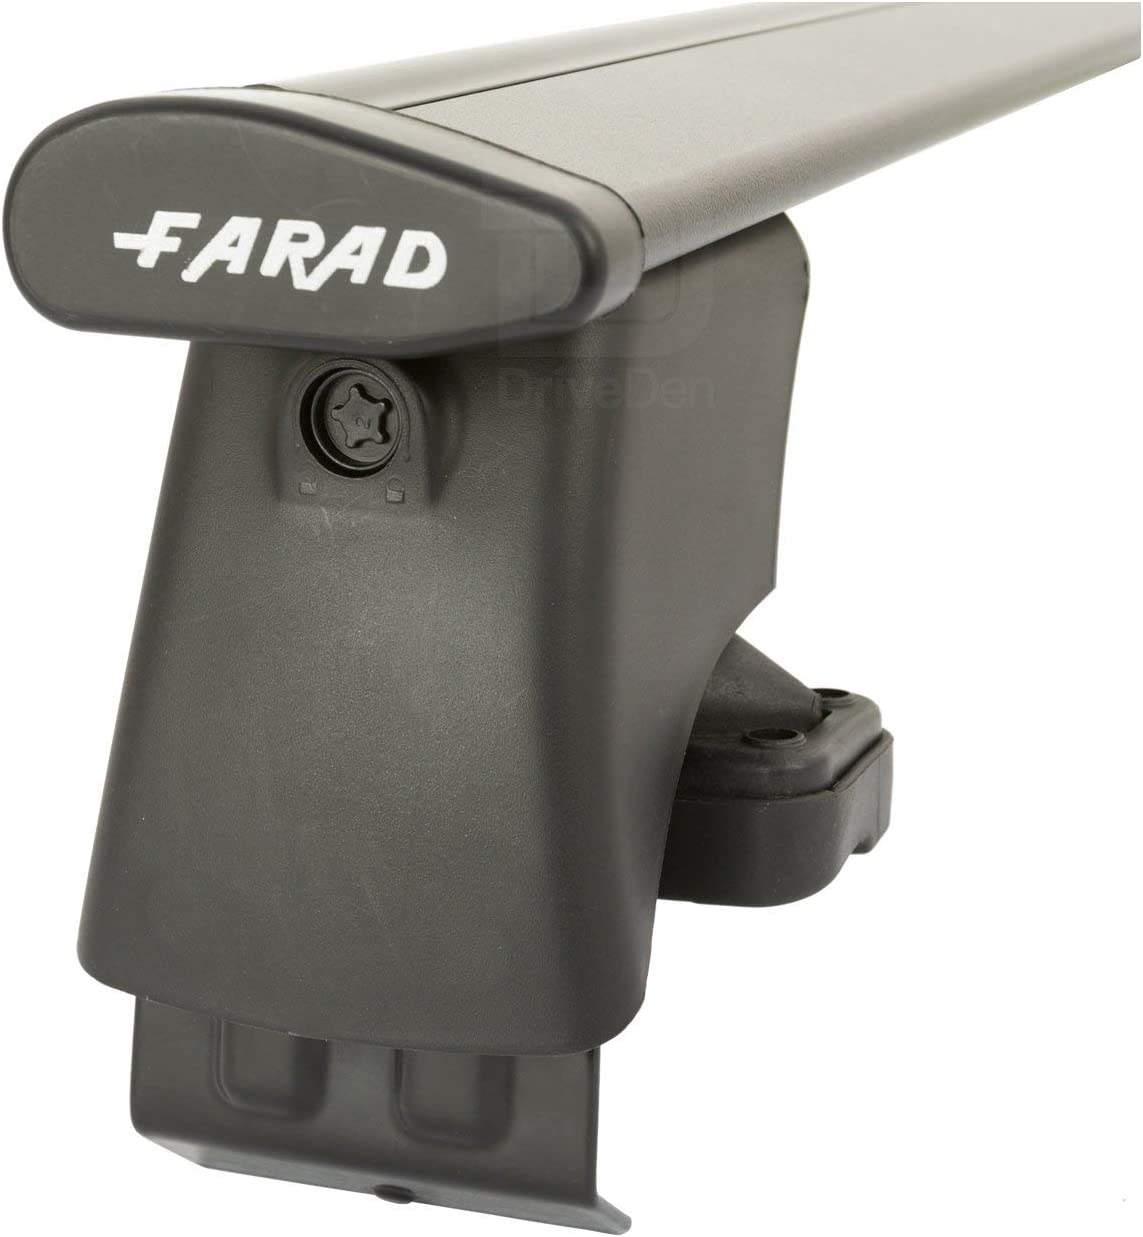 FARAD-Kit H2 per barre portatutto - Volkswagen Golf Plus 2005-2014 (senza corrimano)